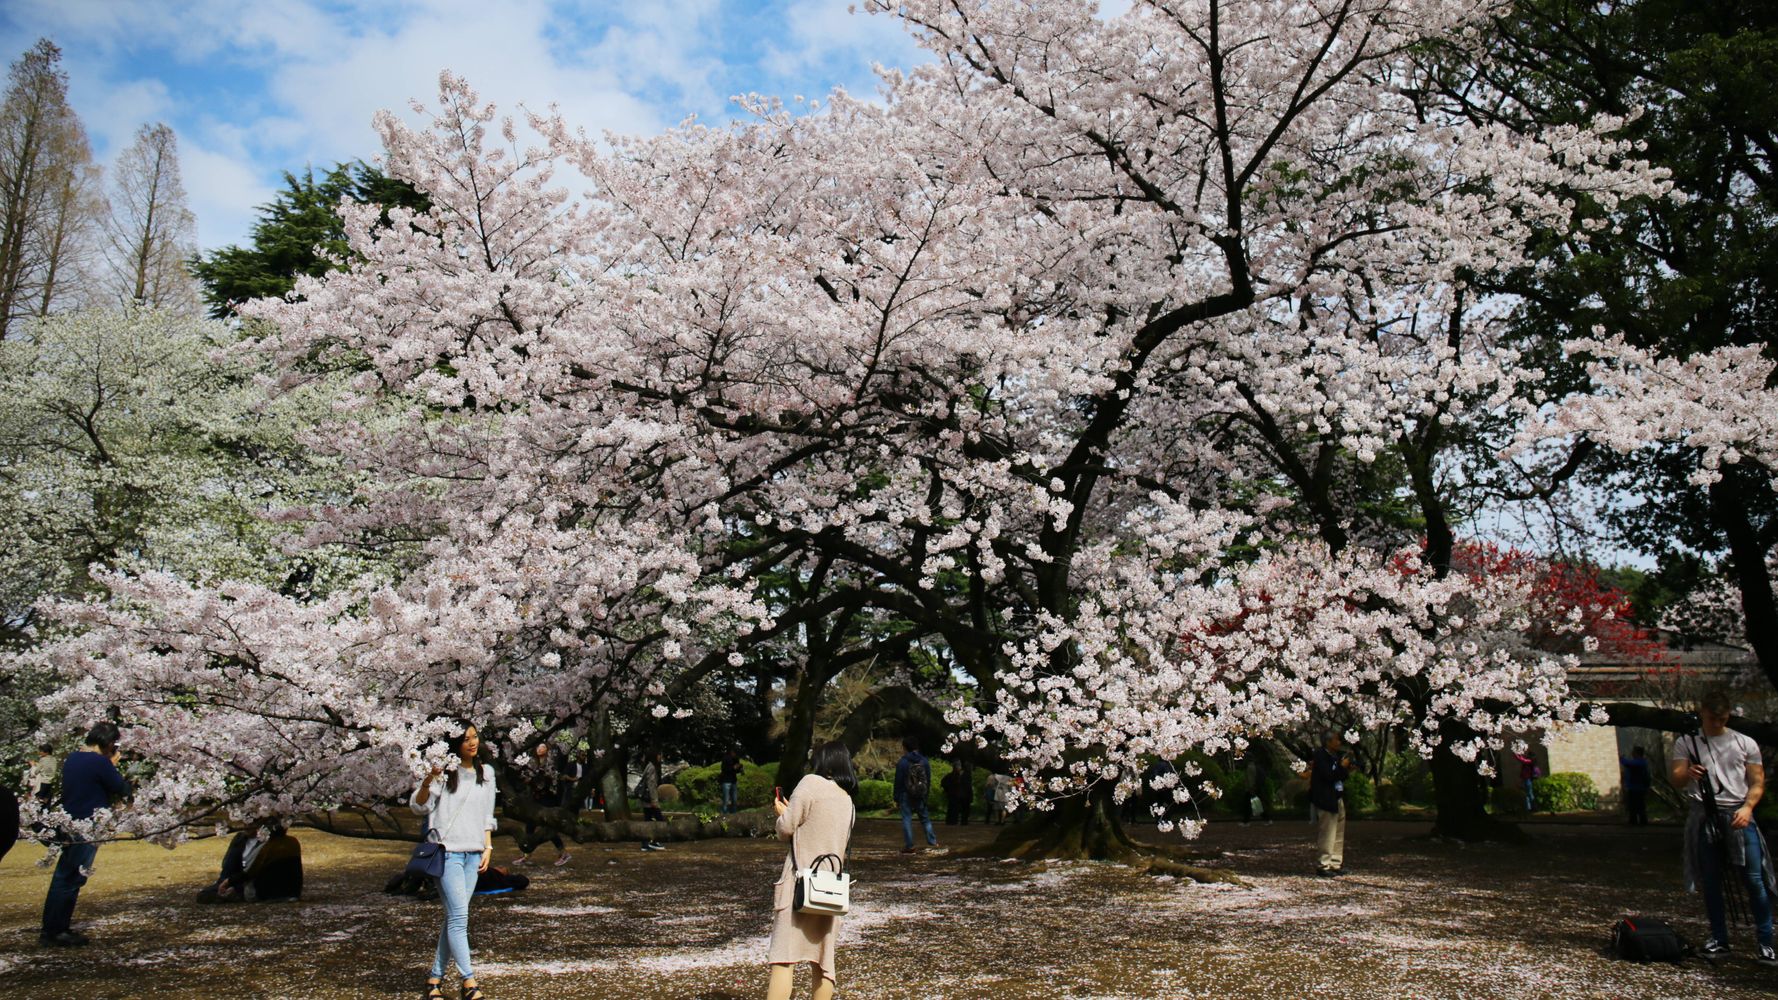 新宿御苑での花見は 事前予約制 予約方法は 期間は3月16日から4月25日まで 環境省が発表 ハフポスト